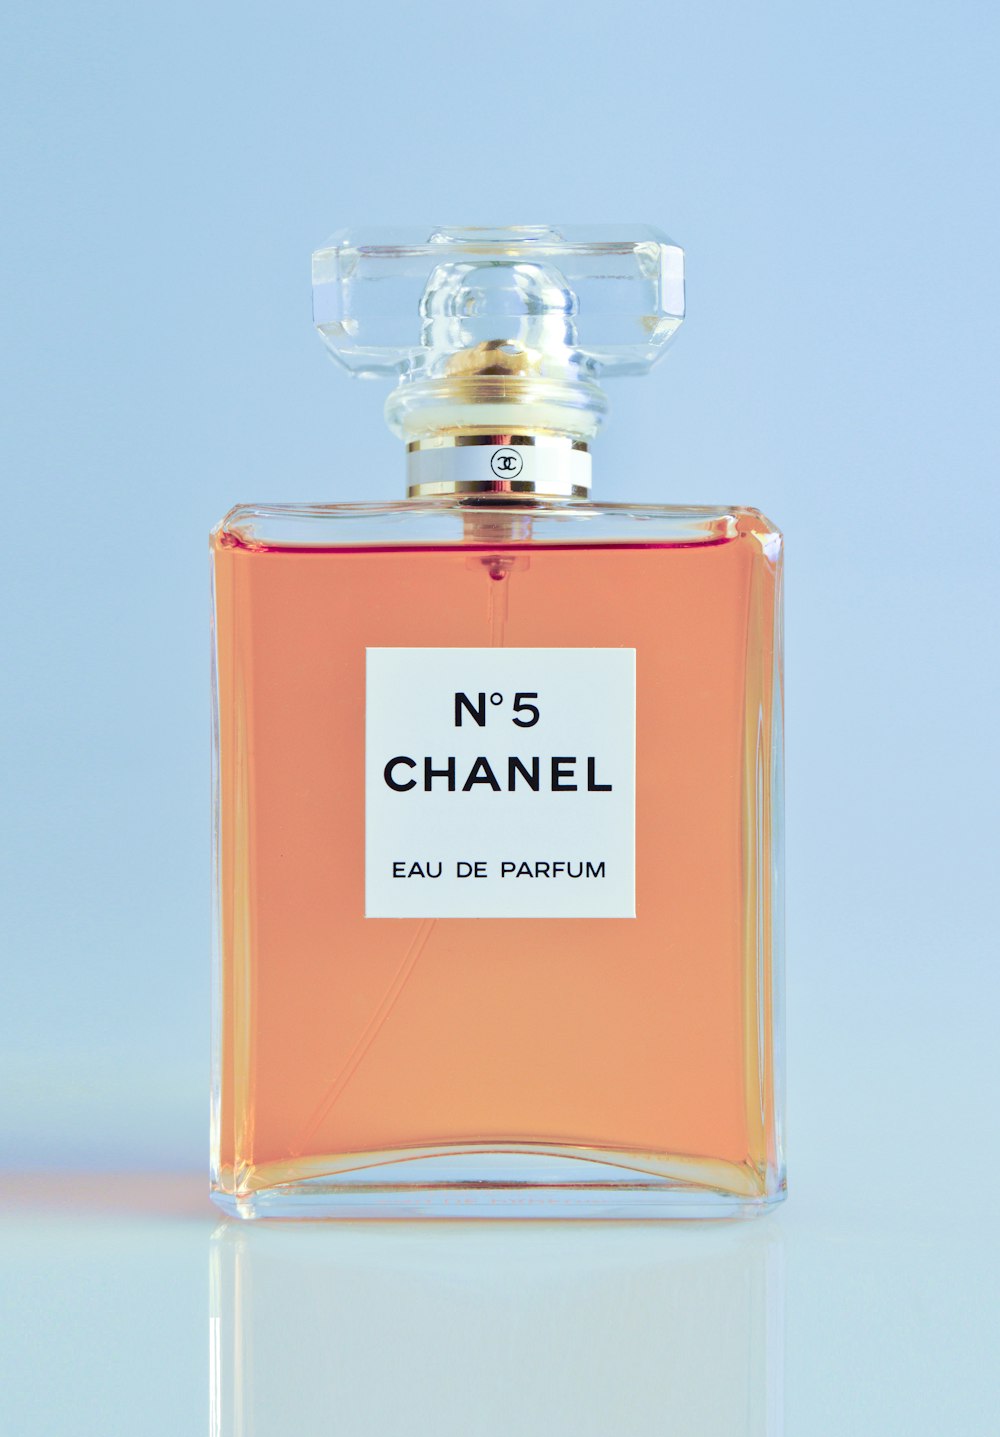 Flacone spray per eau de parfum N5 Chanel